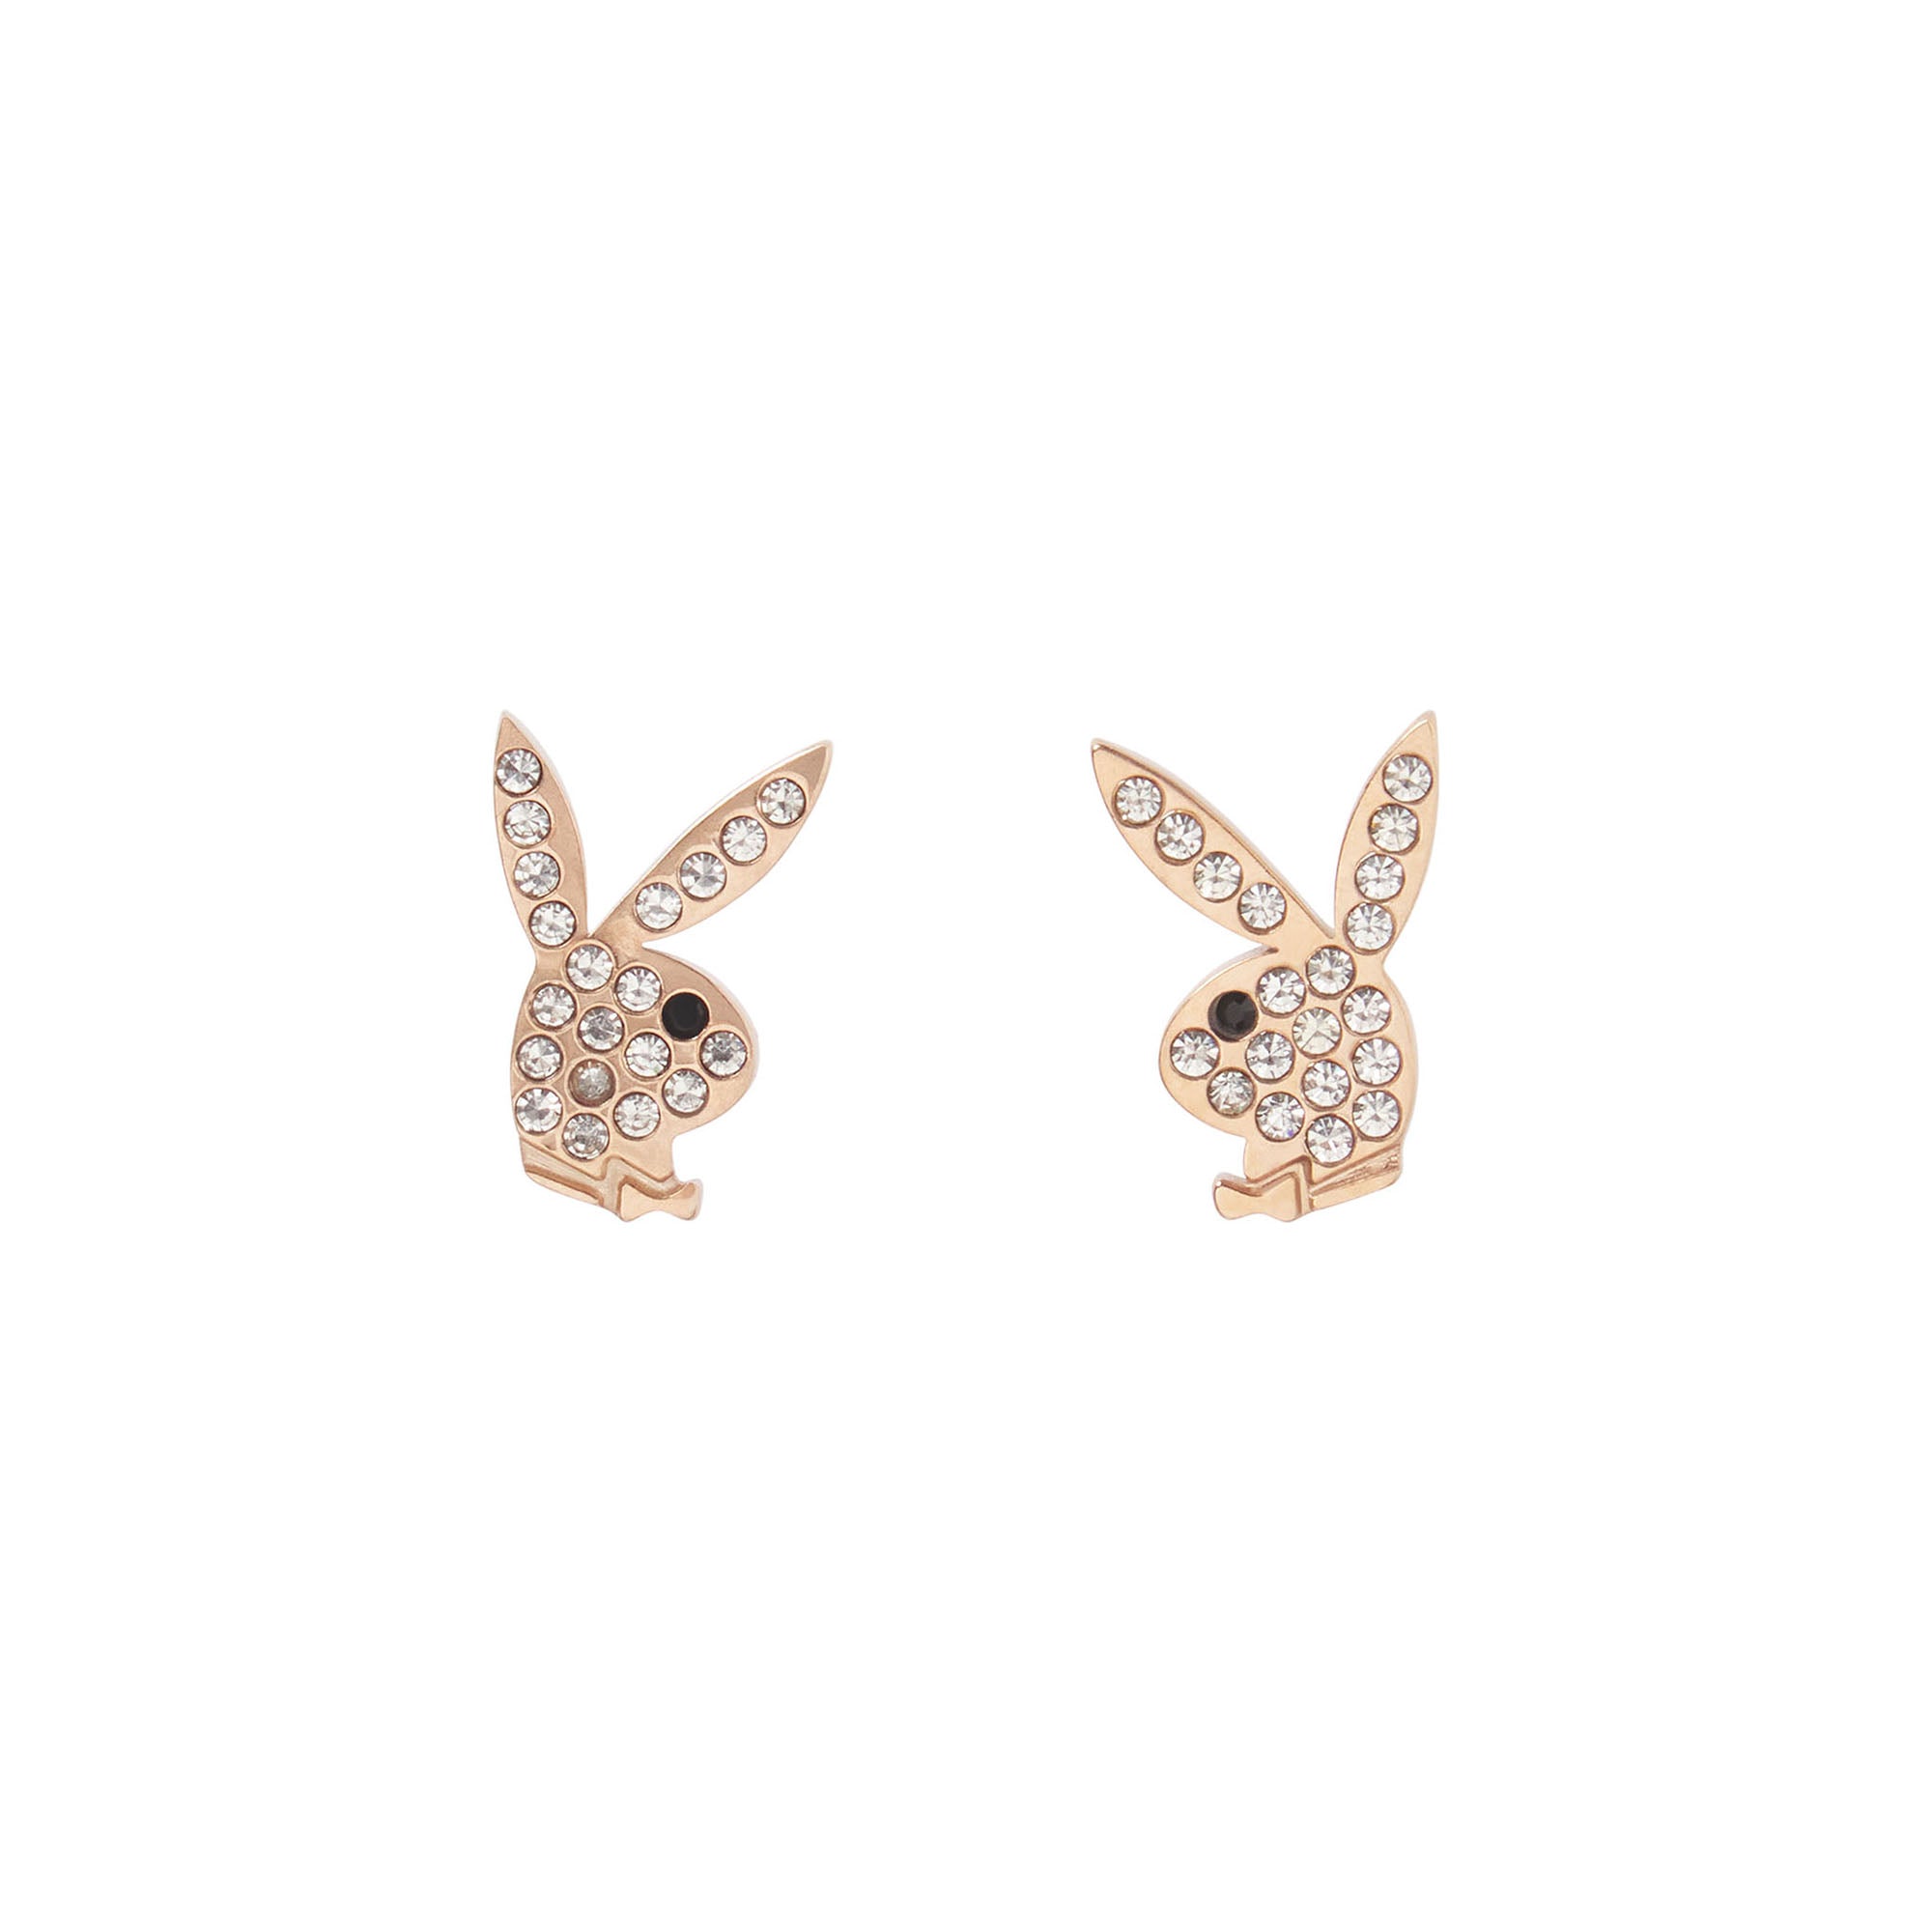 Rabbit Head Pave Stud Earrings